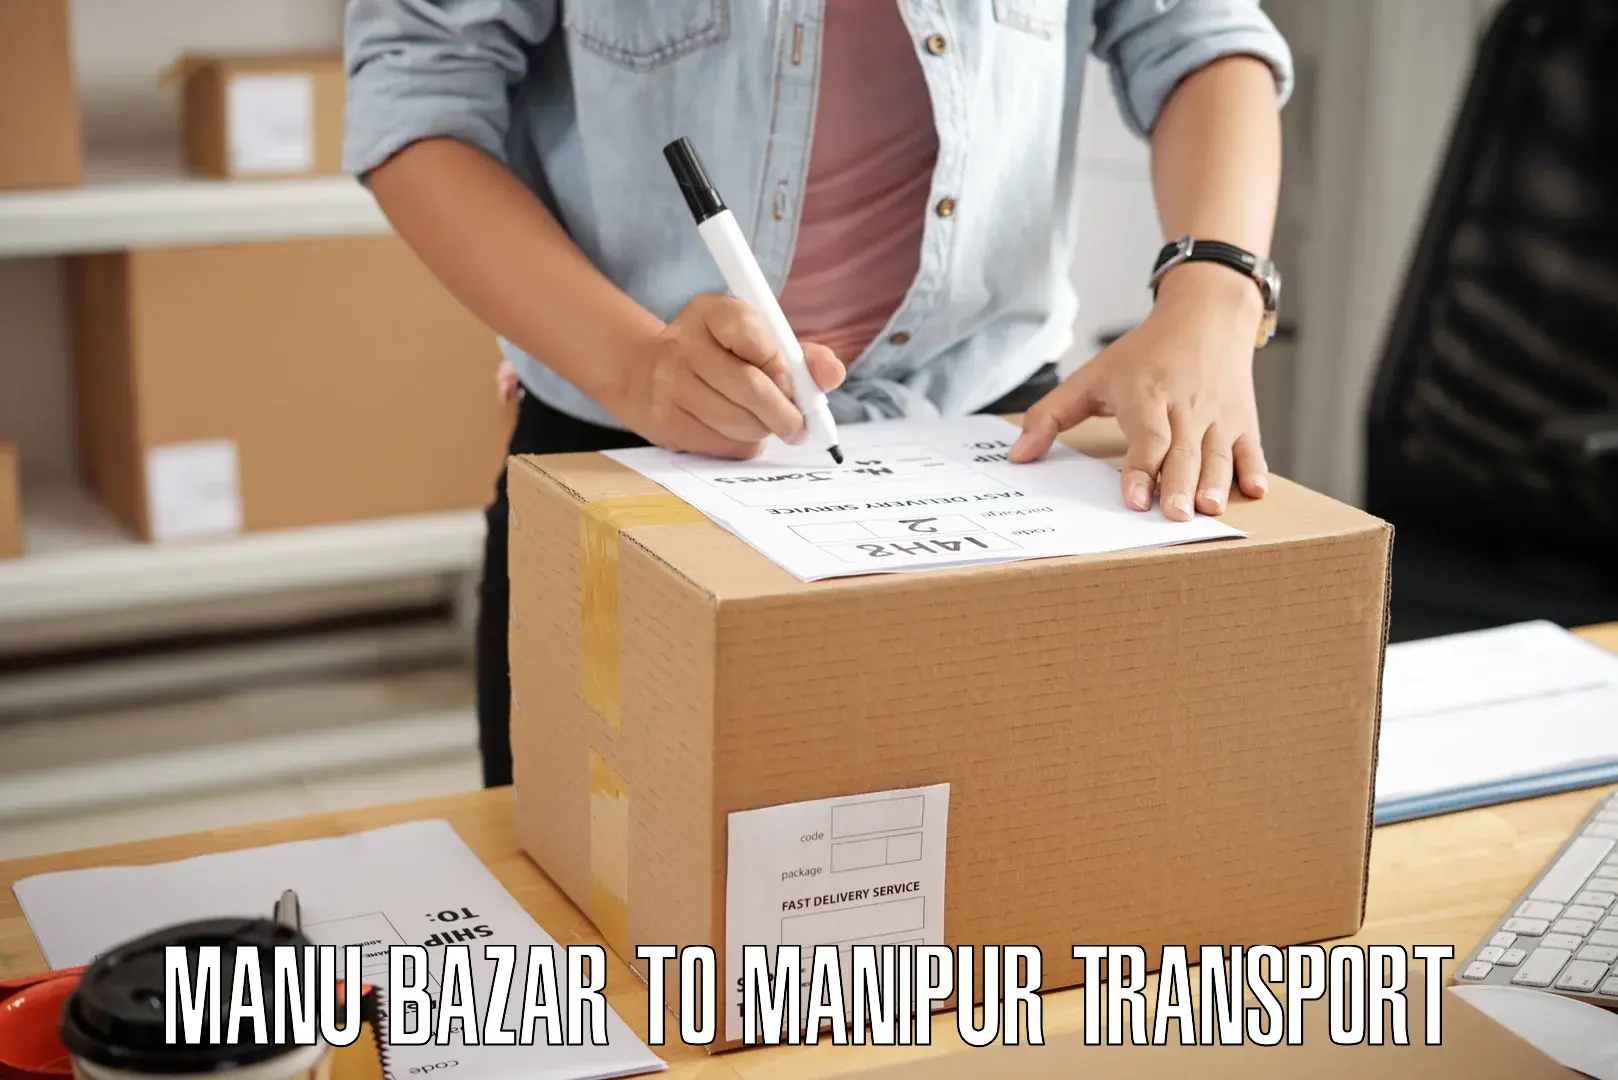 Furniture transport service Manu Bazar to Chandel